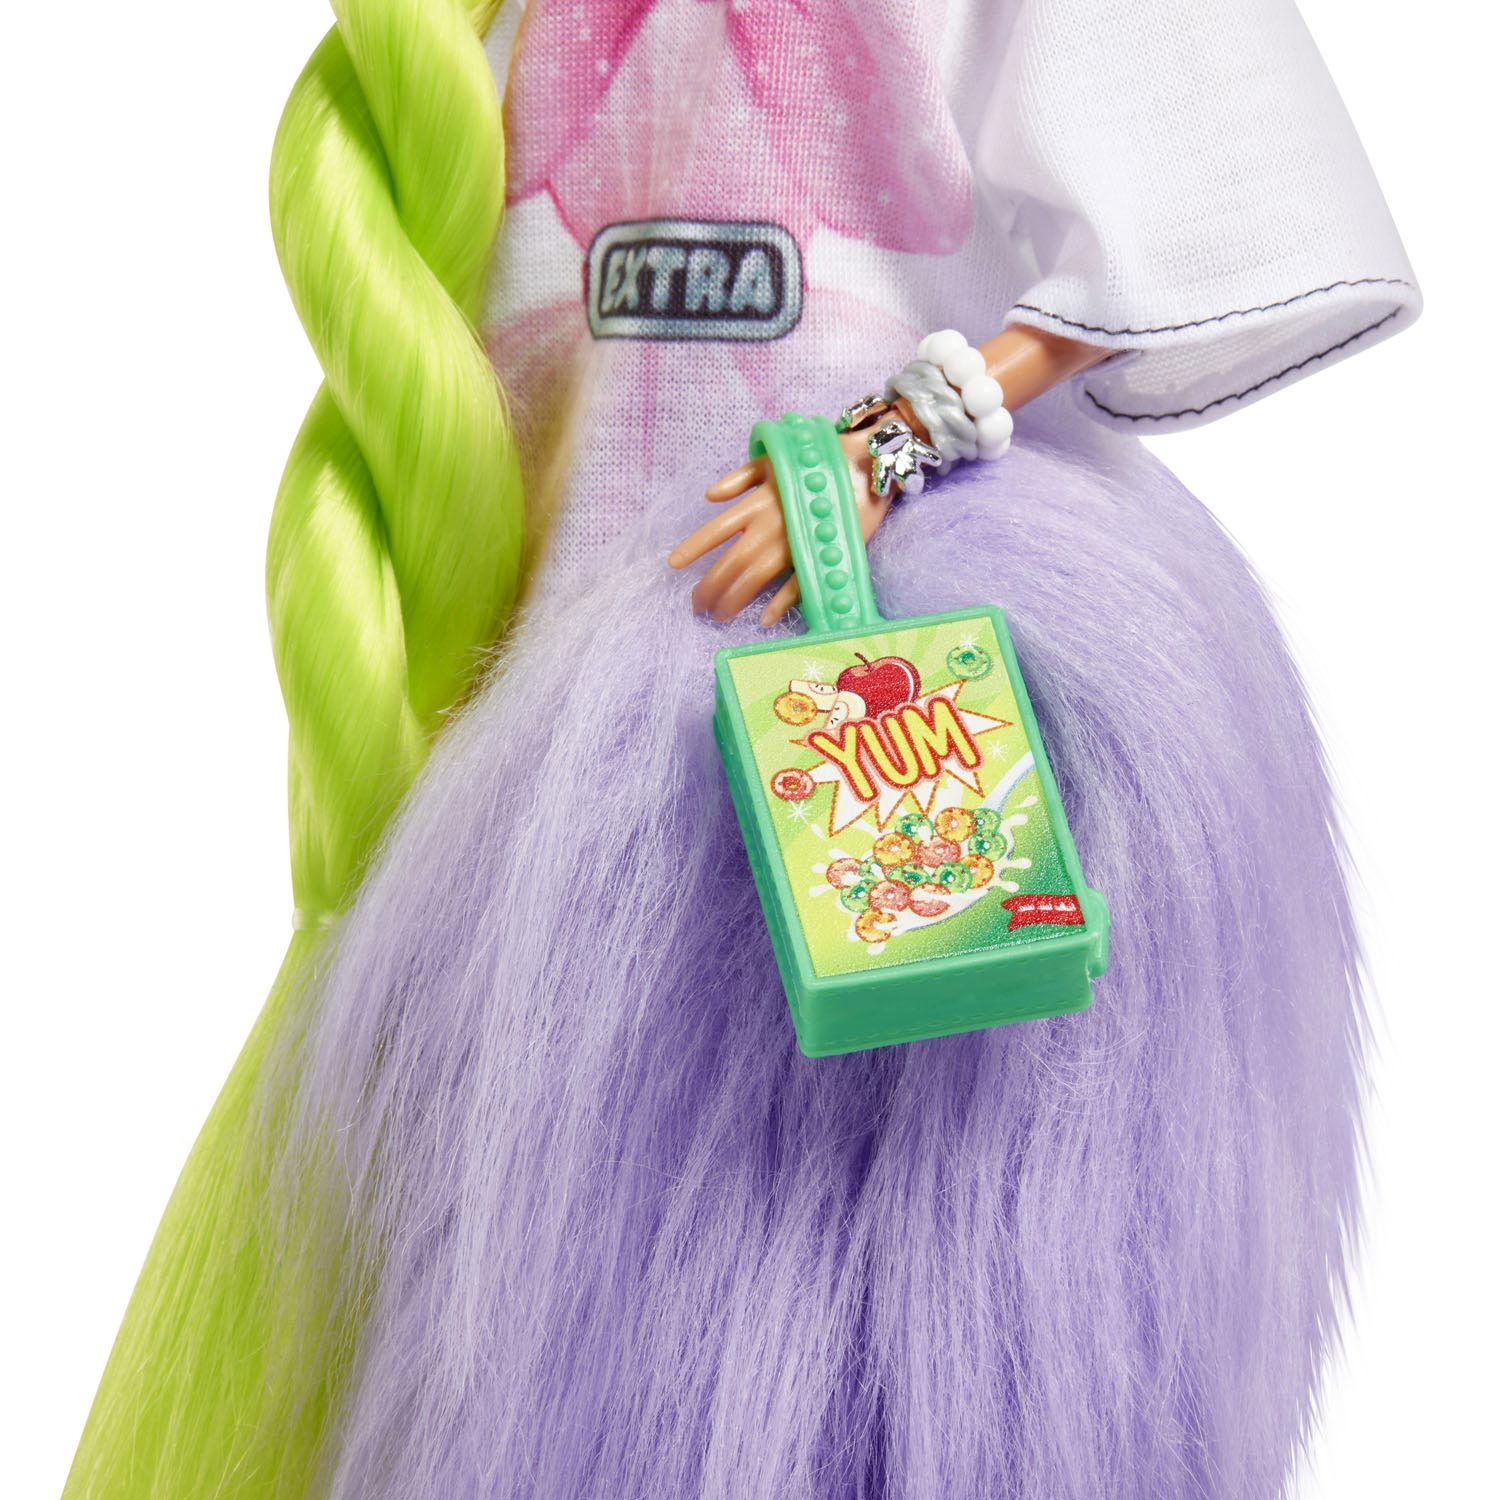 Barbie Extra Pop - Neongroen Haar